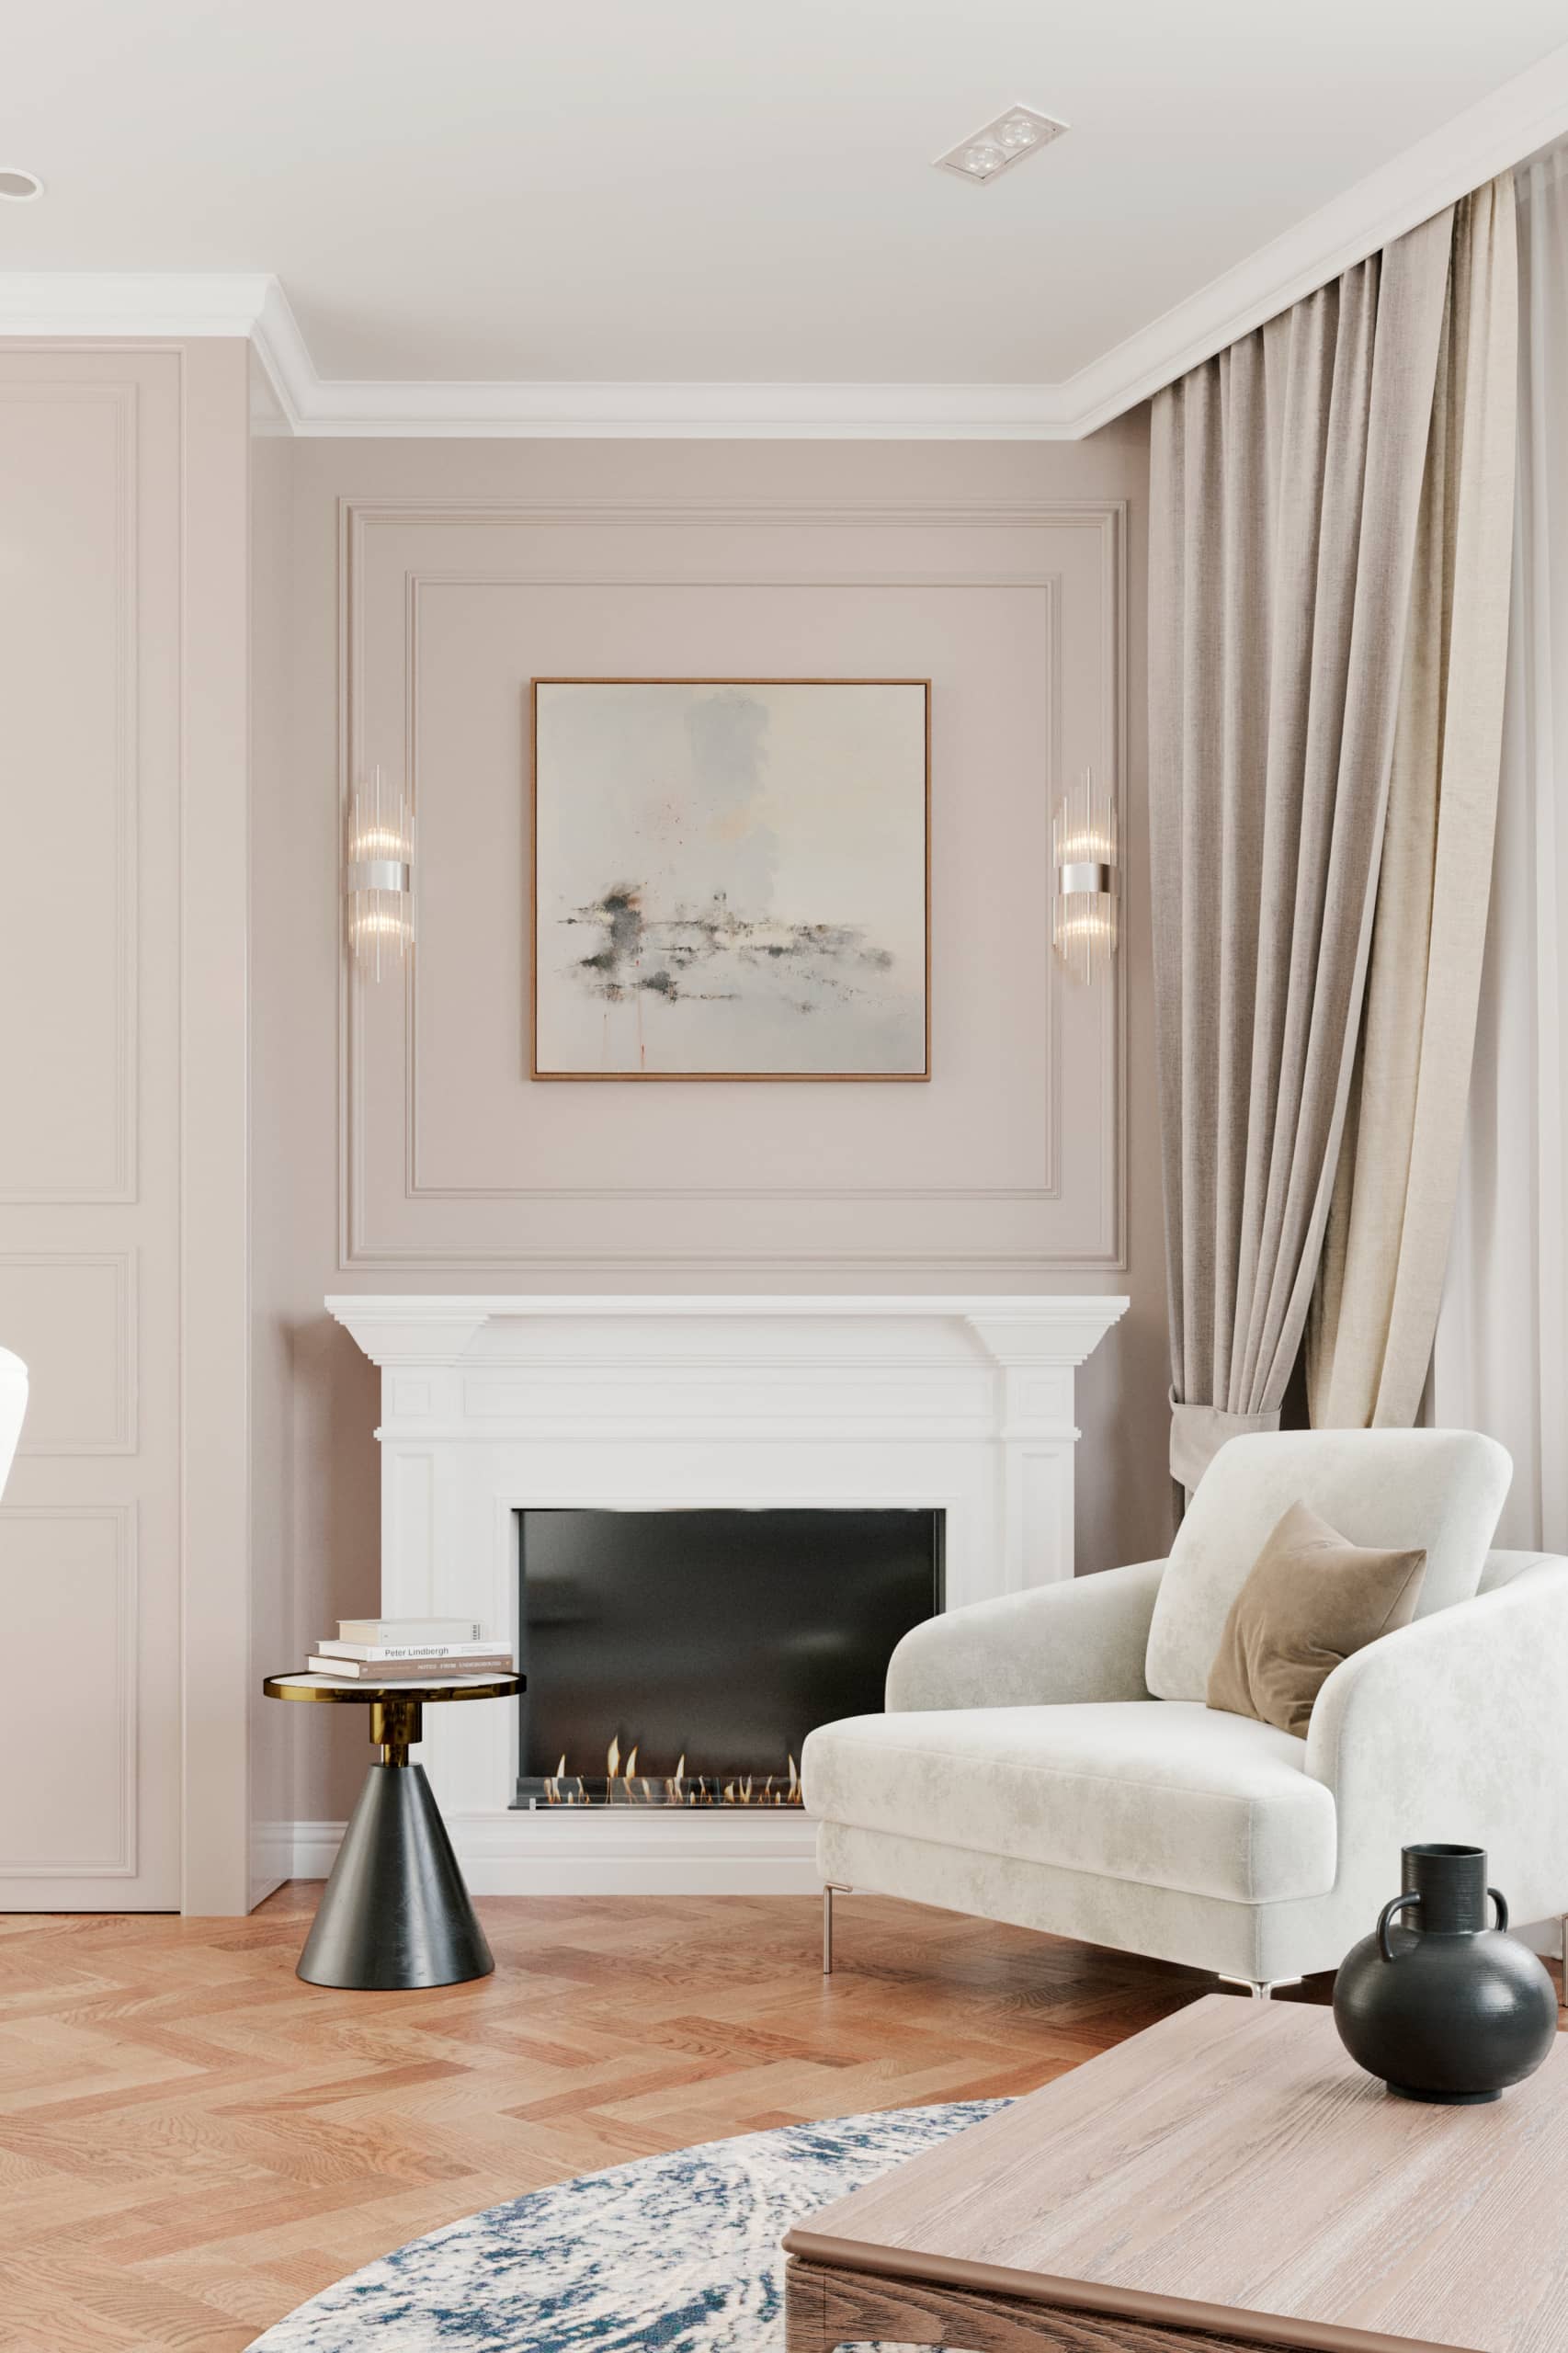 Оформление интерьера гостиной трехкомнатной квартиры в коричневый цвет в стиле современной классики. Фото № 62281.